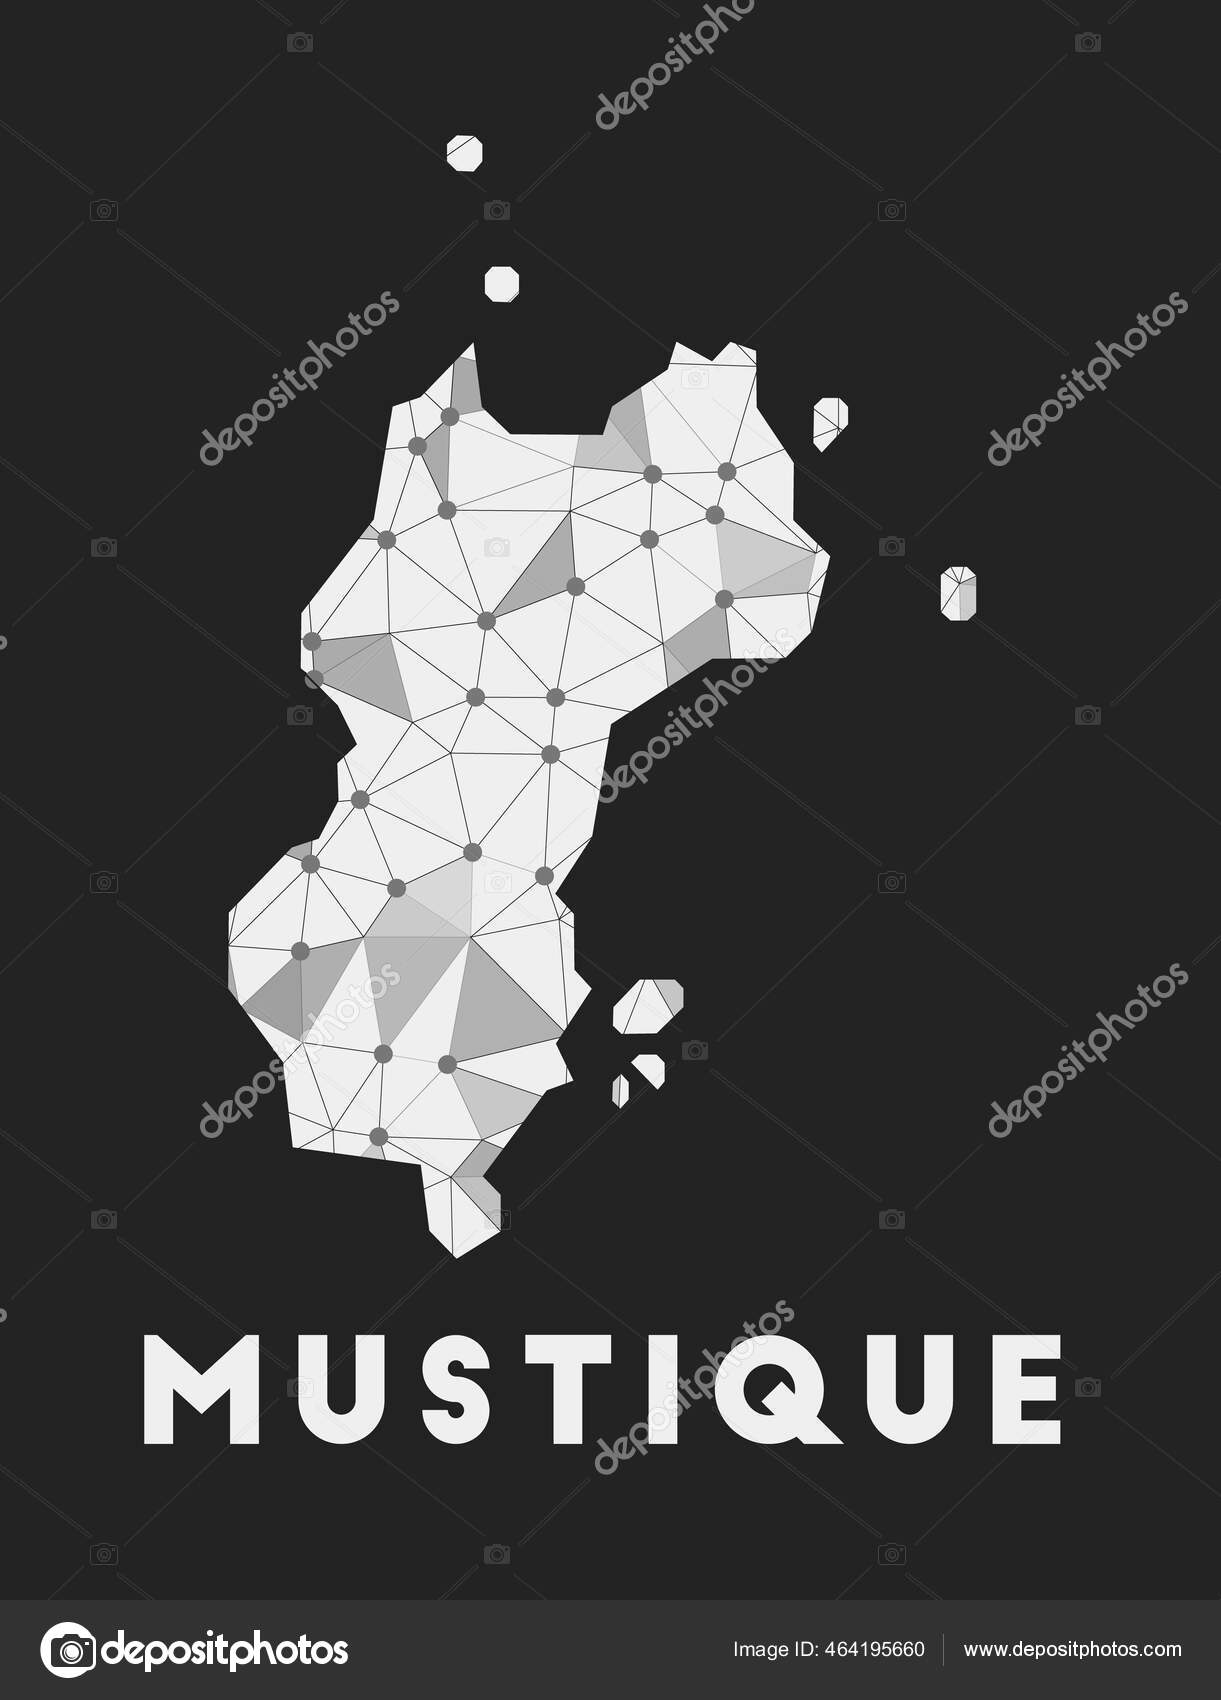 Mustique mapa de la red de comunicación de la isla Mustique diseño ...